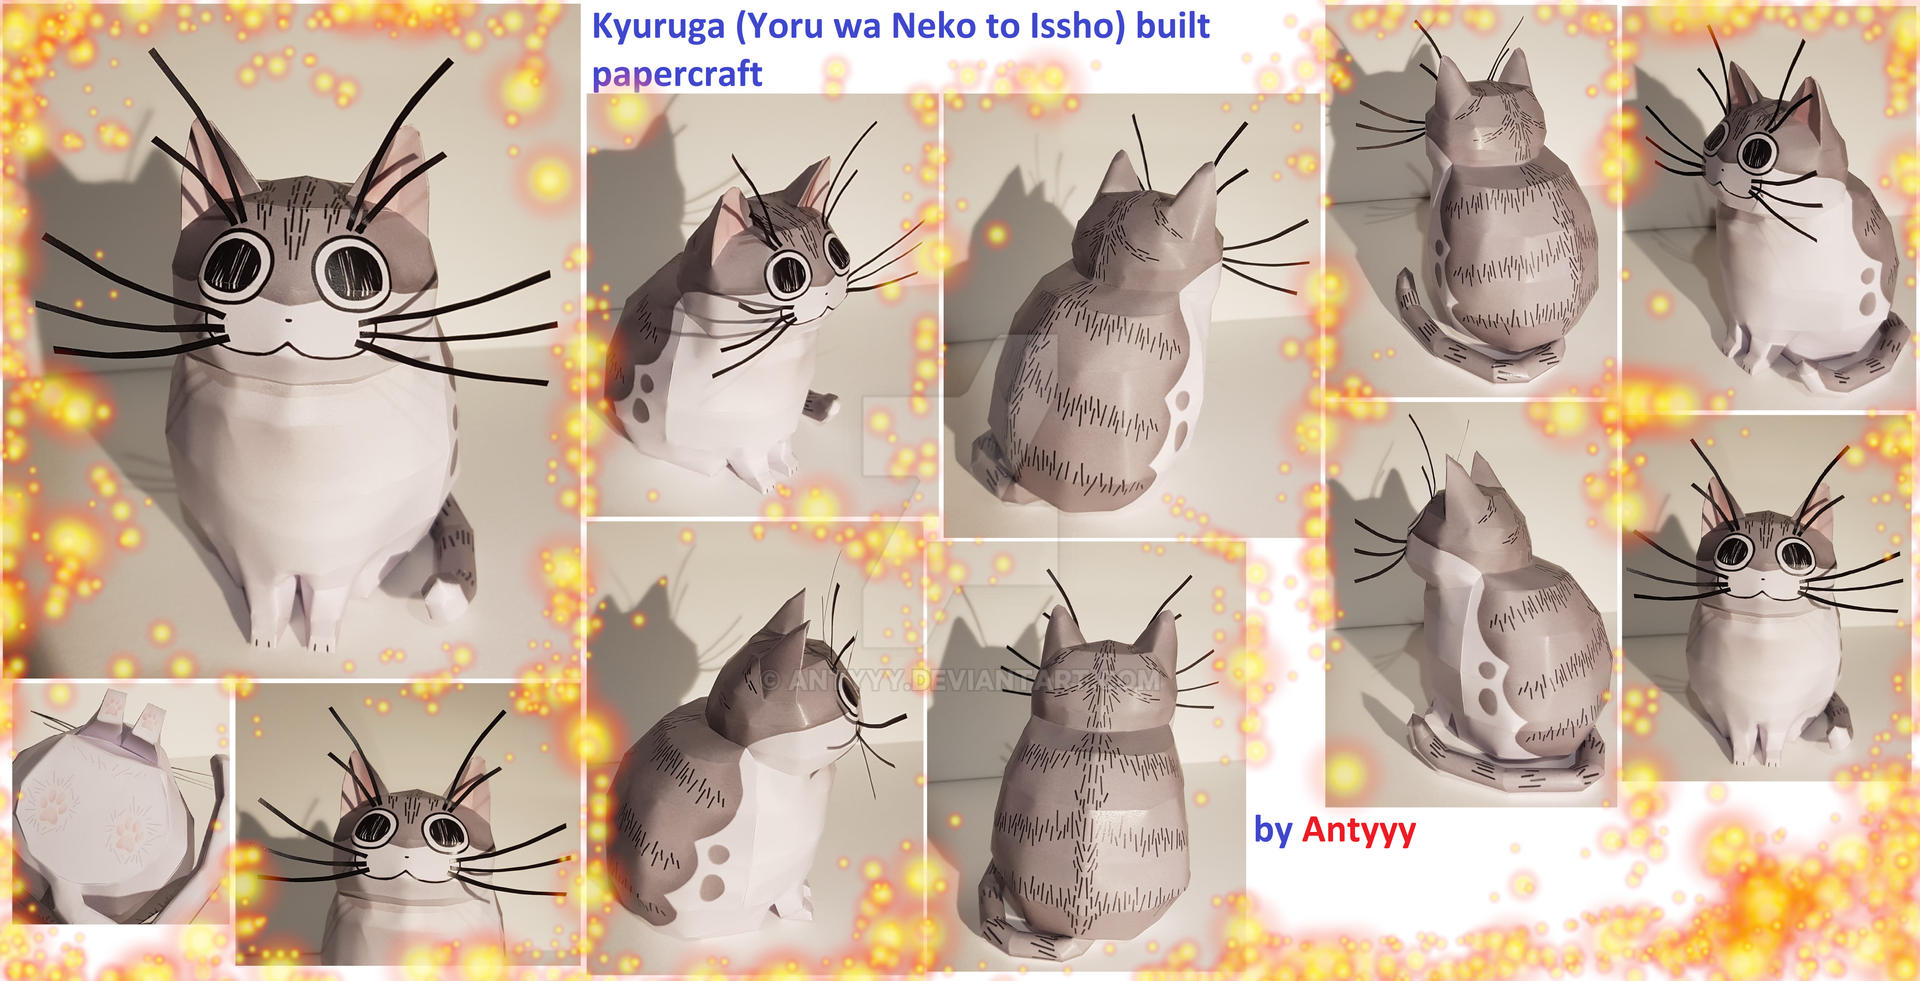 Kyuruga (Yoru wa Neko to Issho) built papercraft by Antyyy on DeviantArt